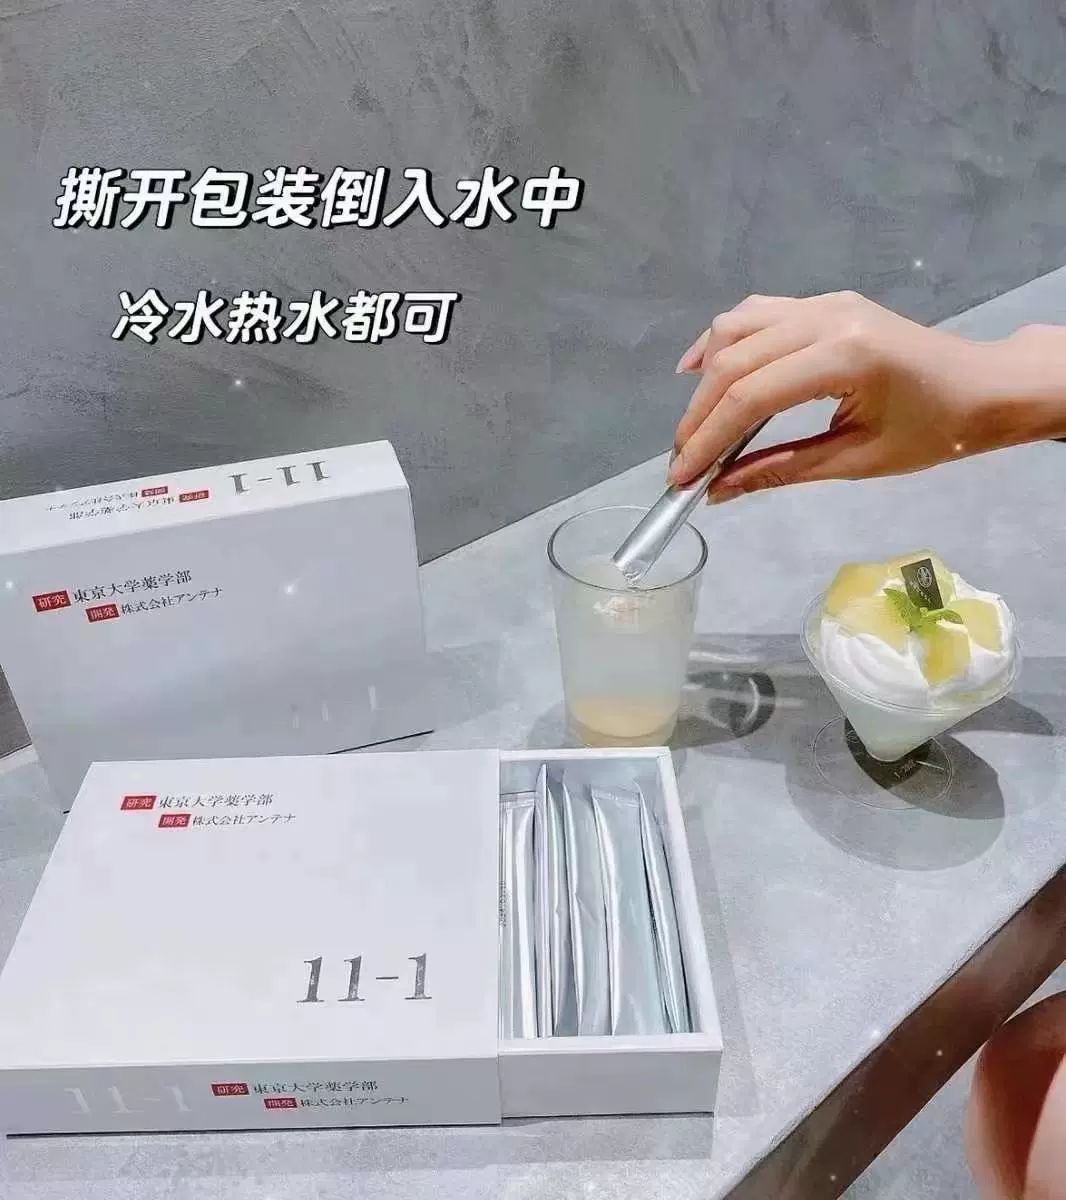 现货日本东京大学11-1乳酸菌粉末免疫活性益生菌30包改善体质-Taobao